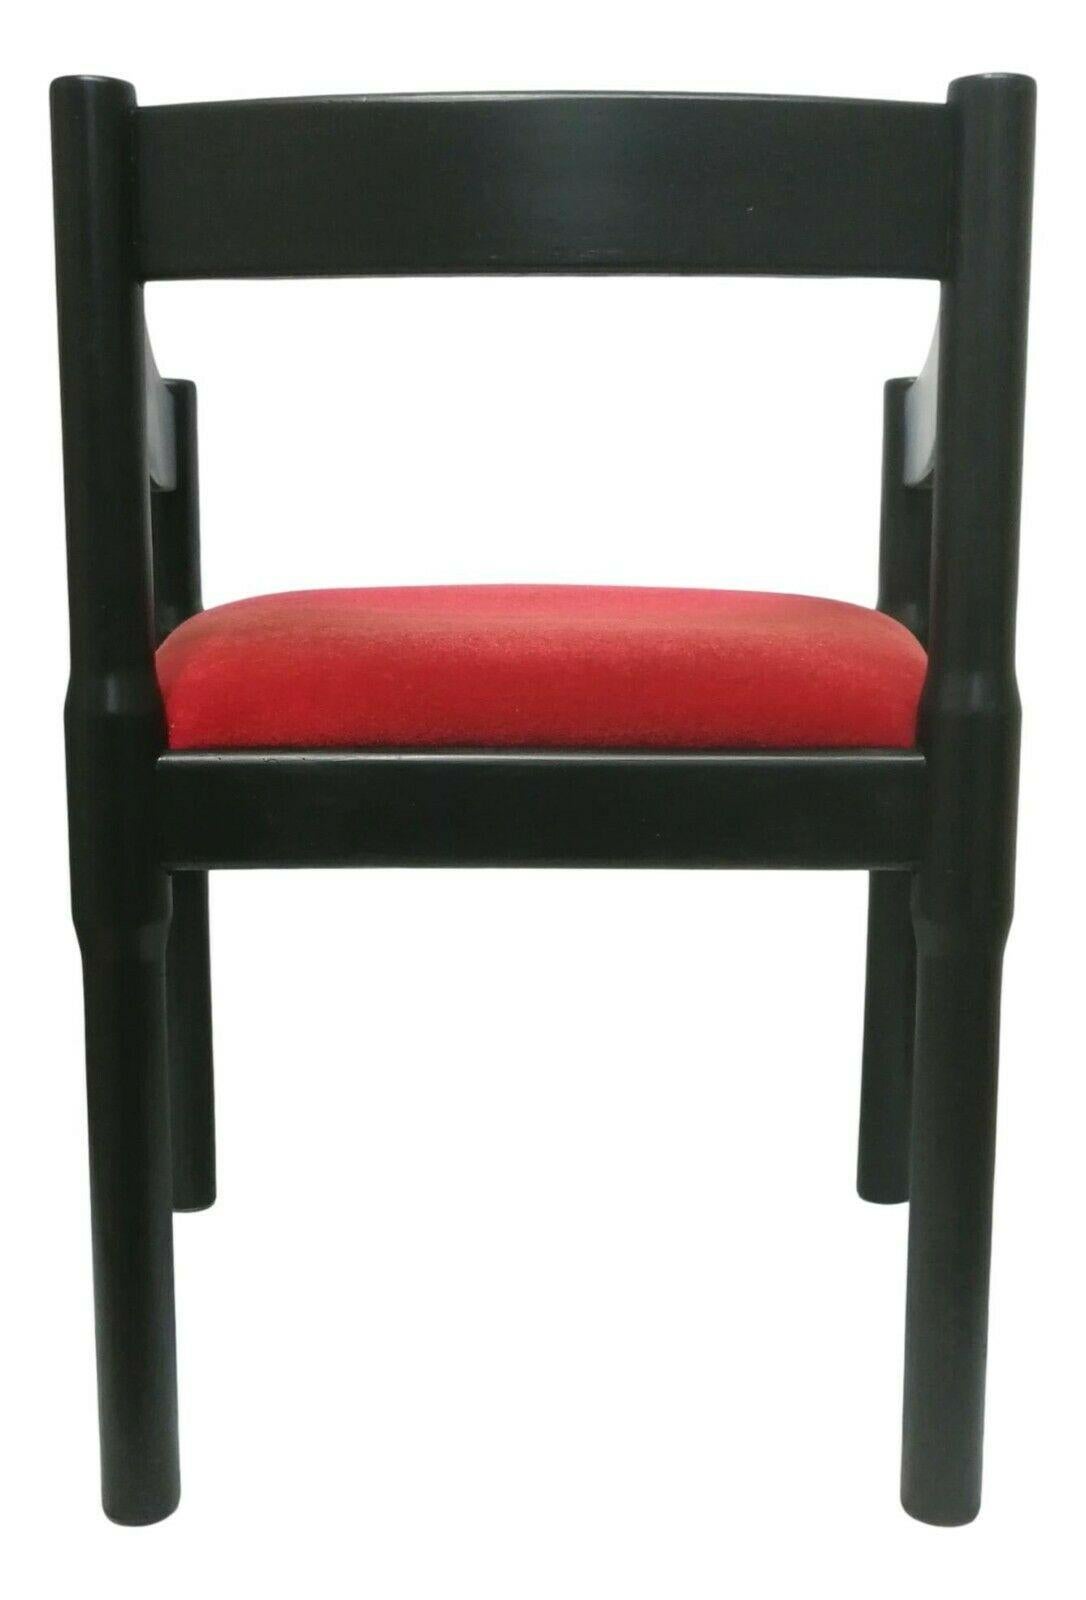 magistretti chair